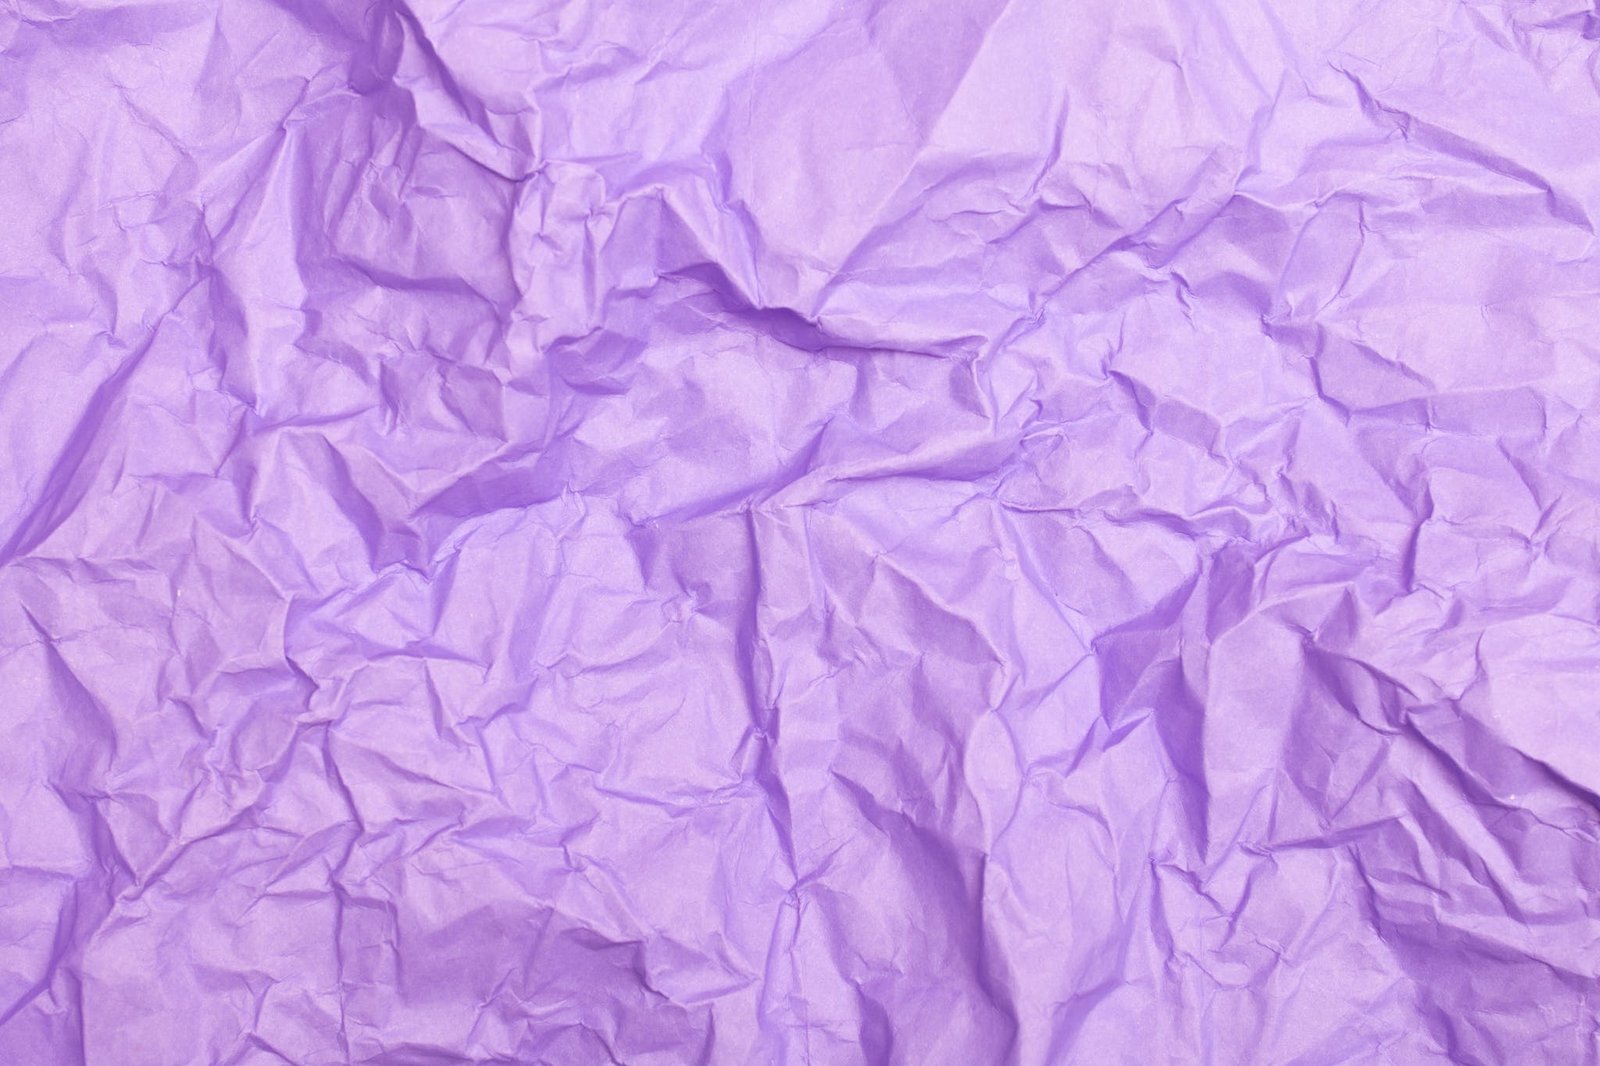 A Close-Up Shot of a Crumpled Purple Paper